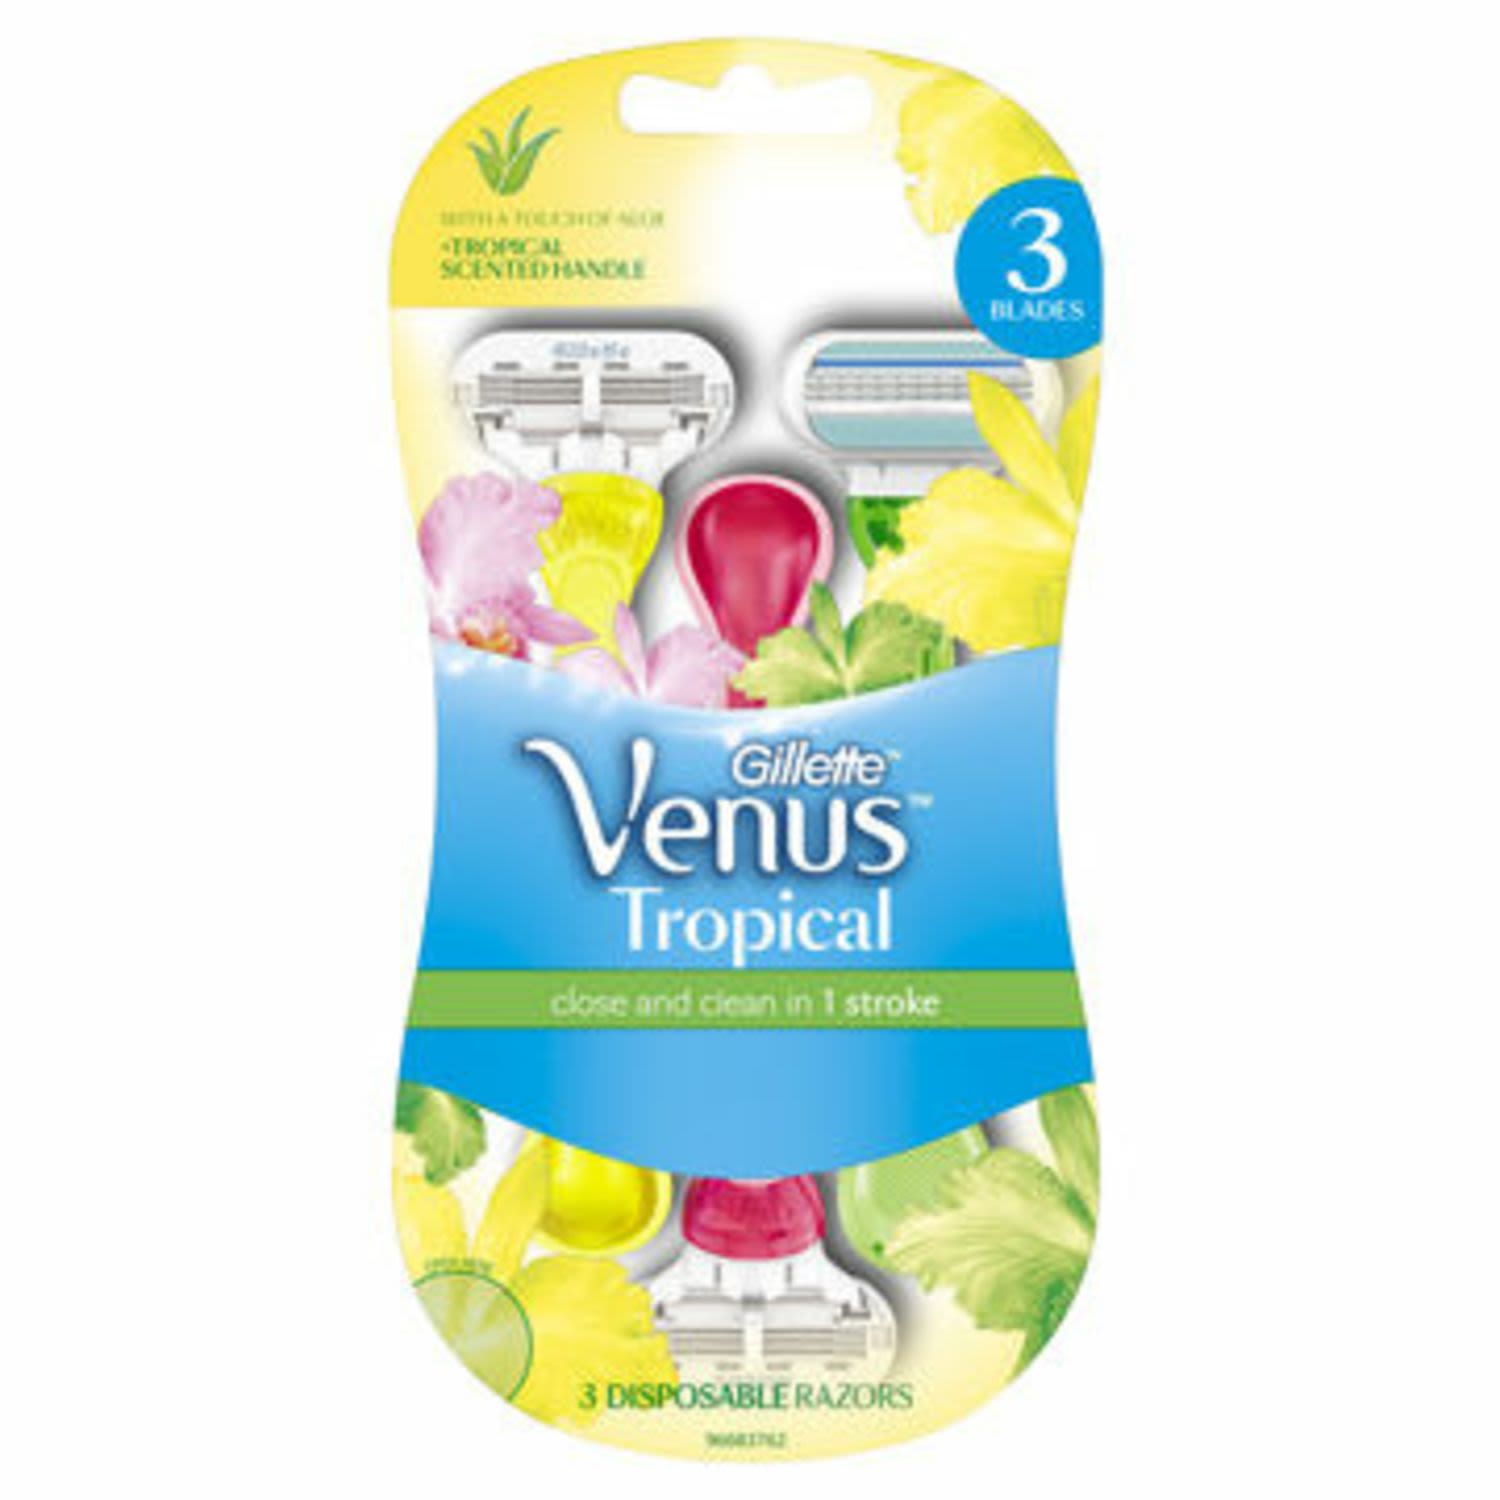 Gillette Venus Tropical Women's Disposable Razor, 3 Each